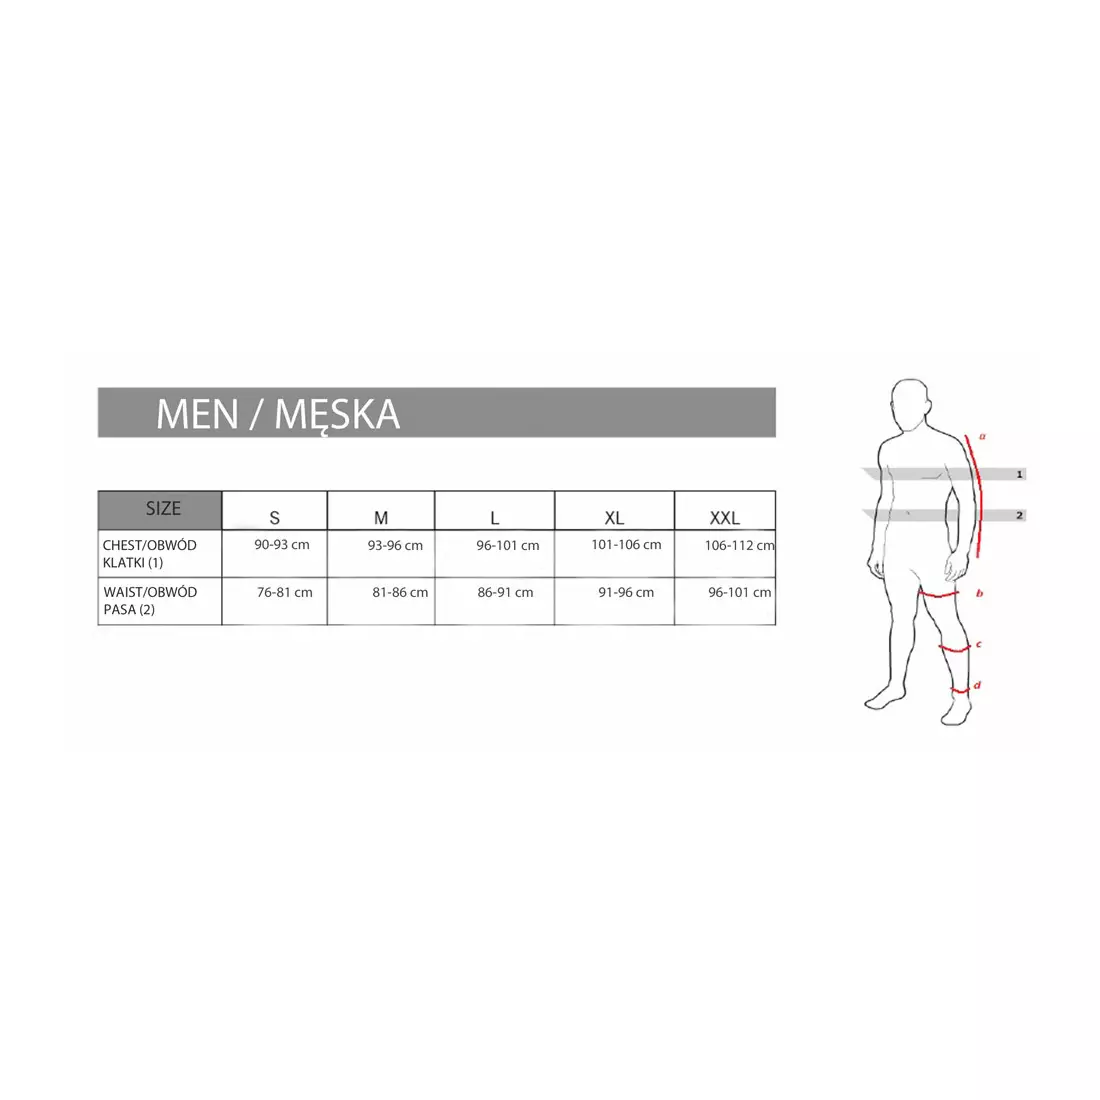 FDX 1810 pantaloni izolați pentru ciclism pentru bărbați, fără bretele, negru și roșu